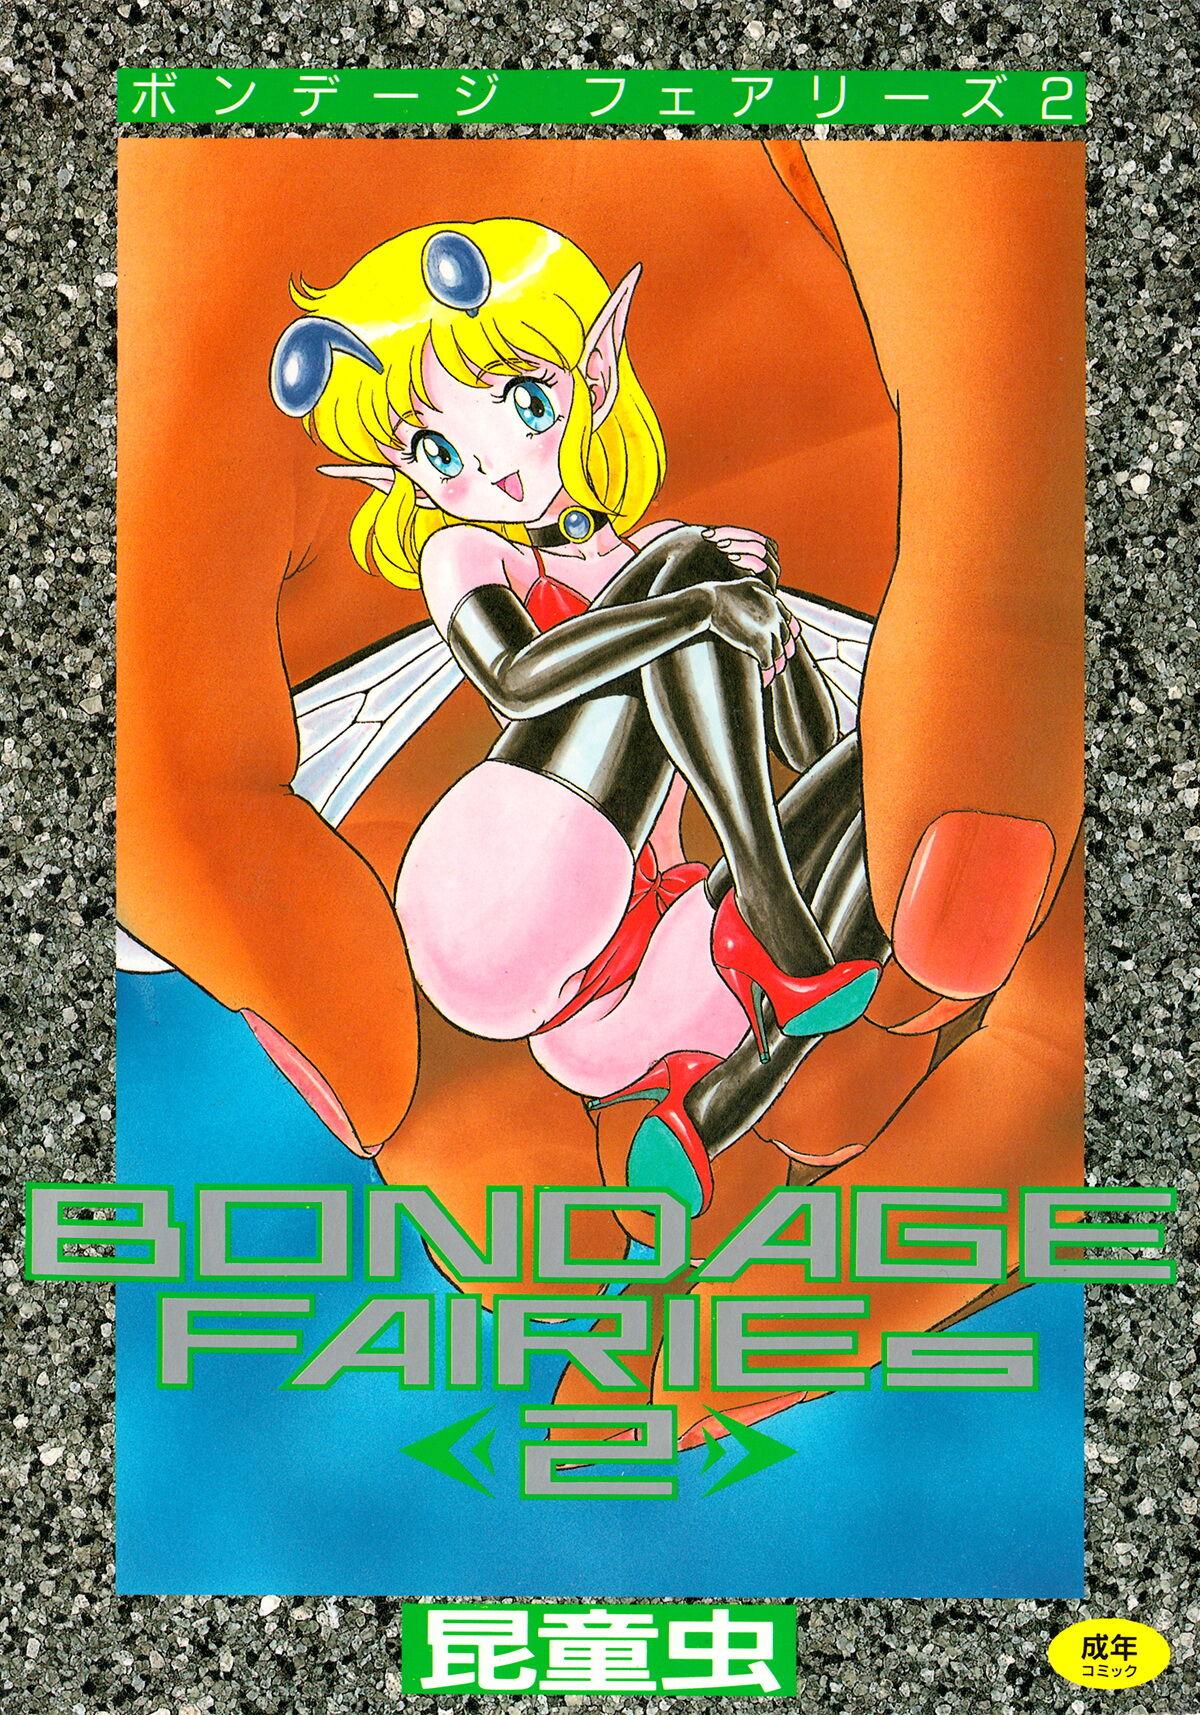 Bondage Fairies 2 0